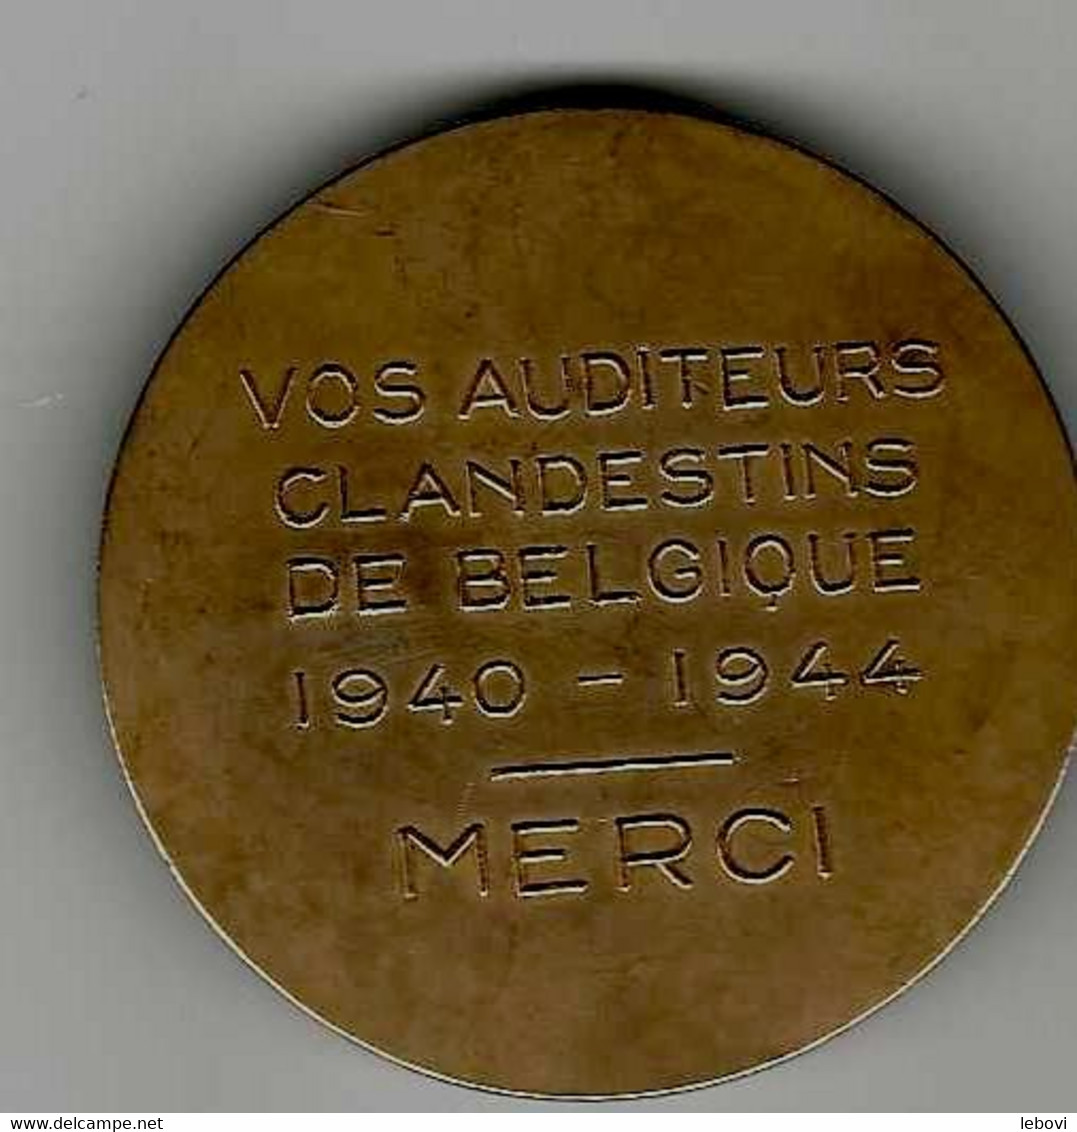 BELGIQUE – AVERS « RENE PAYOT» - REVERS «Vos Auditeurs/clandestins/de Belgique/1940 – 1944/merci » - Professionals / Firms